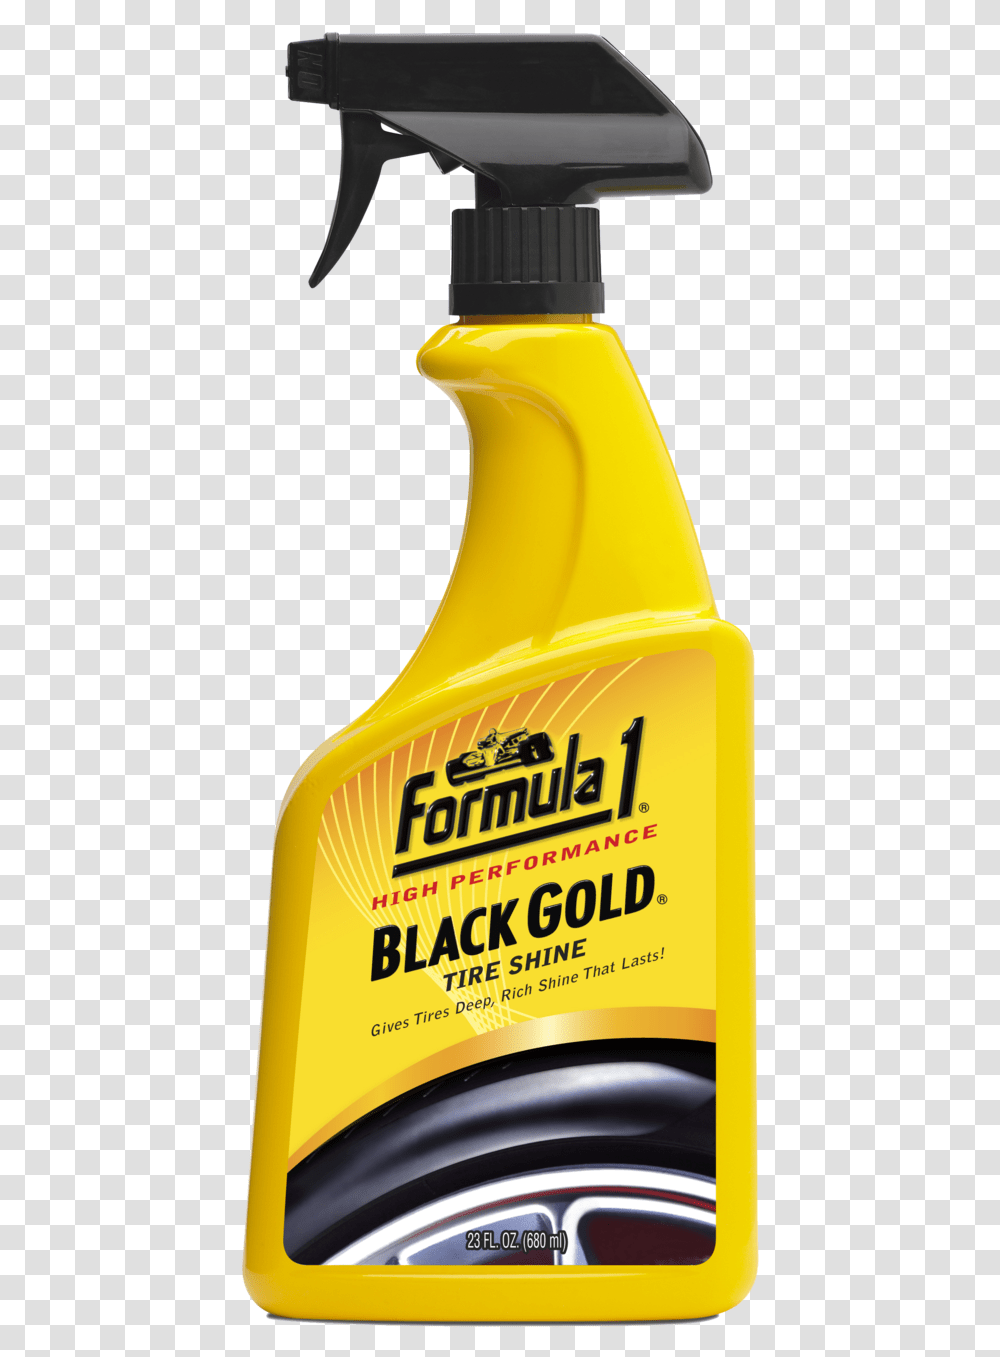 Formula 1 Black Gold Tire Shine, Label, Juice, Beverage Transparent Png